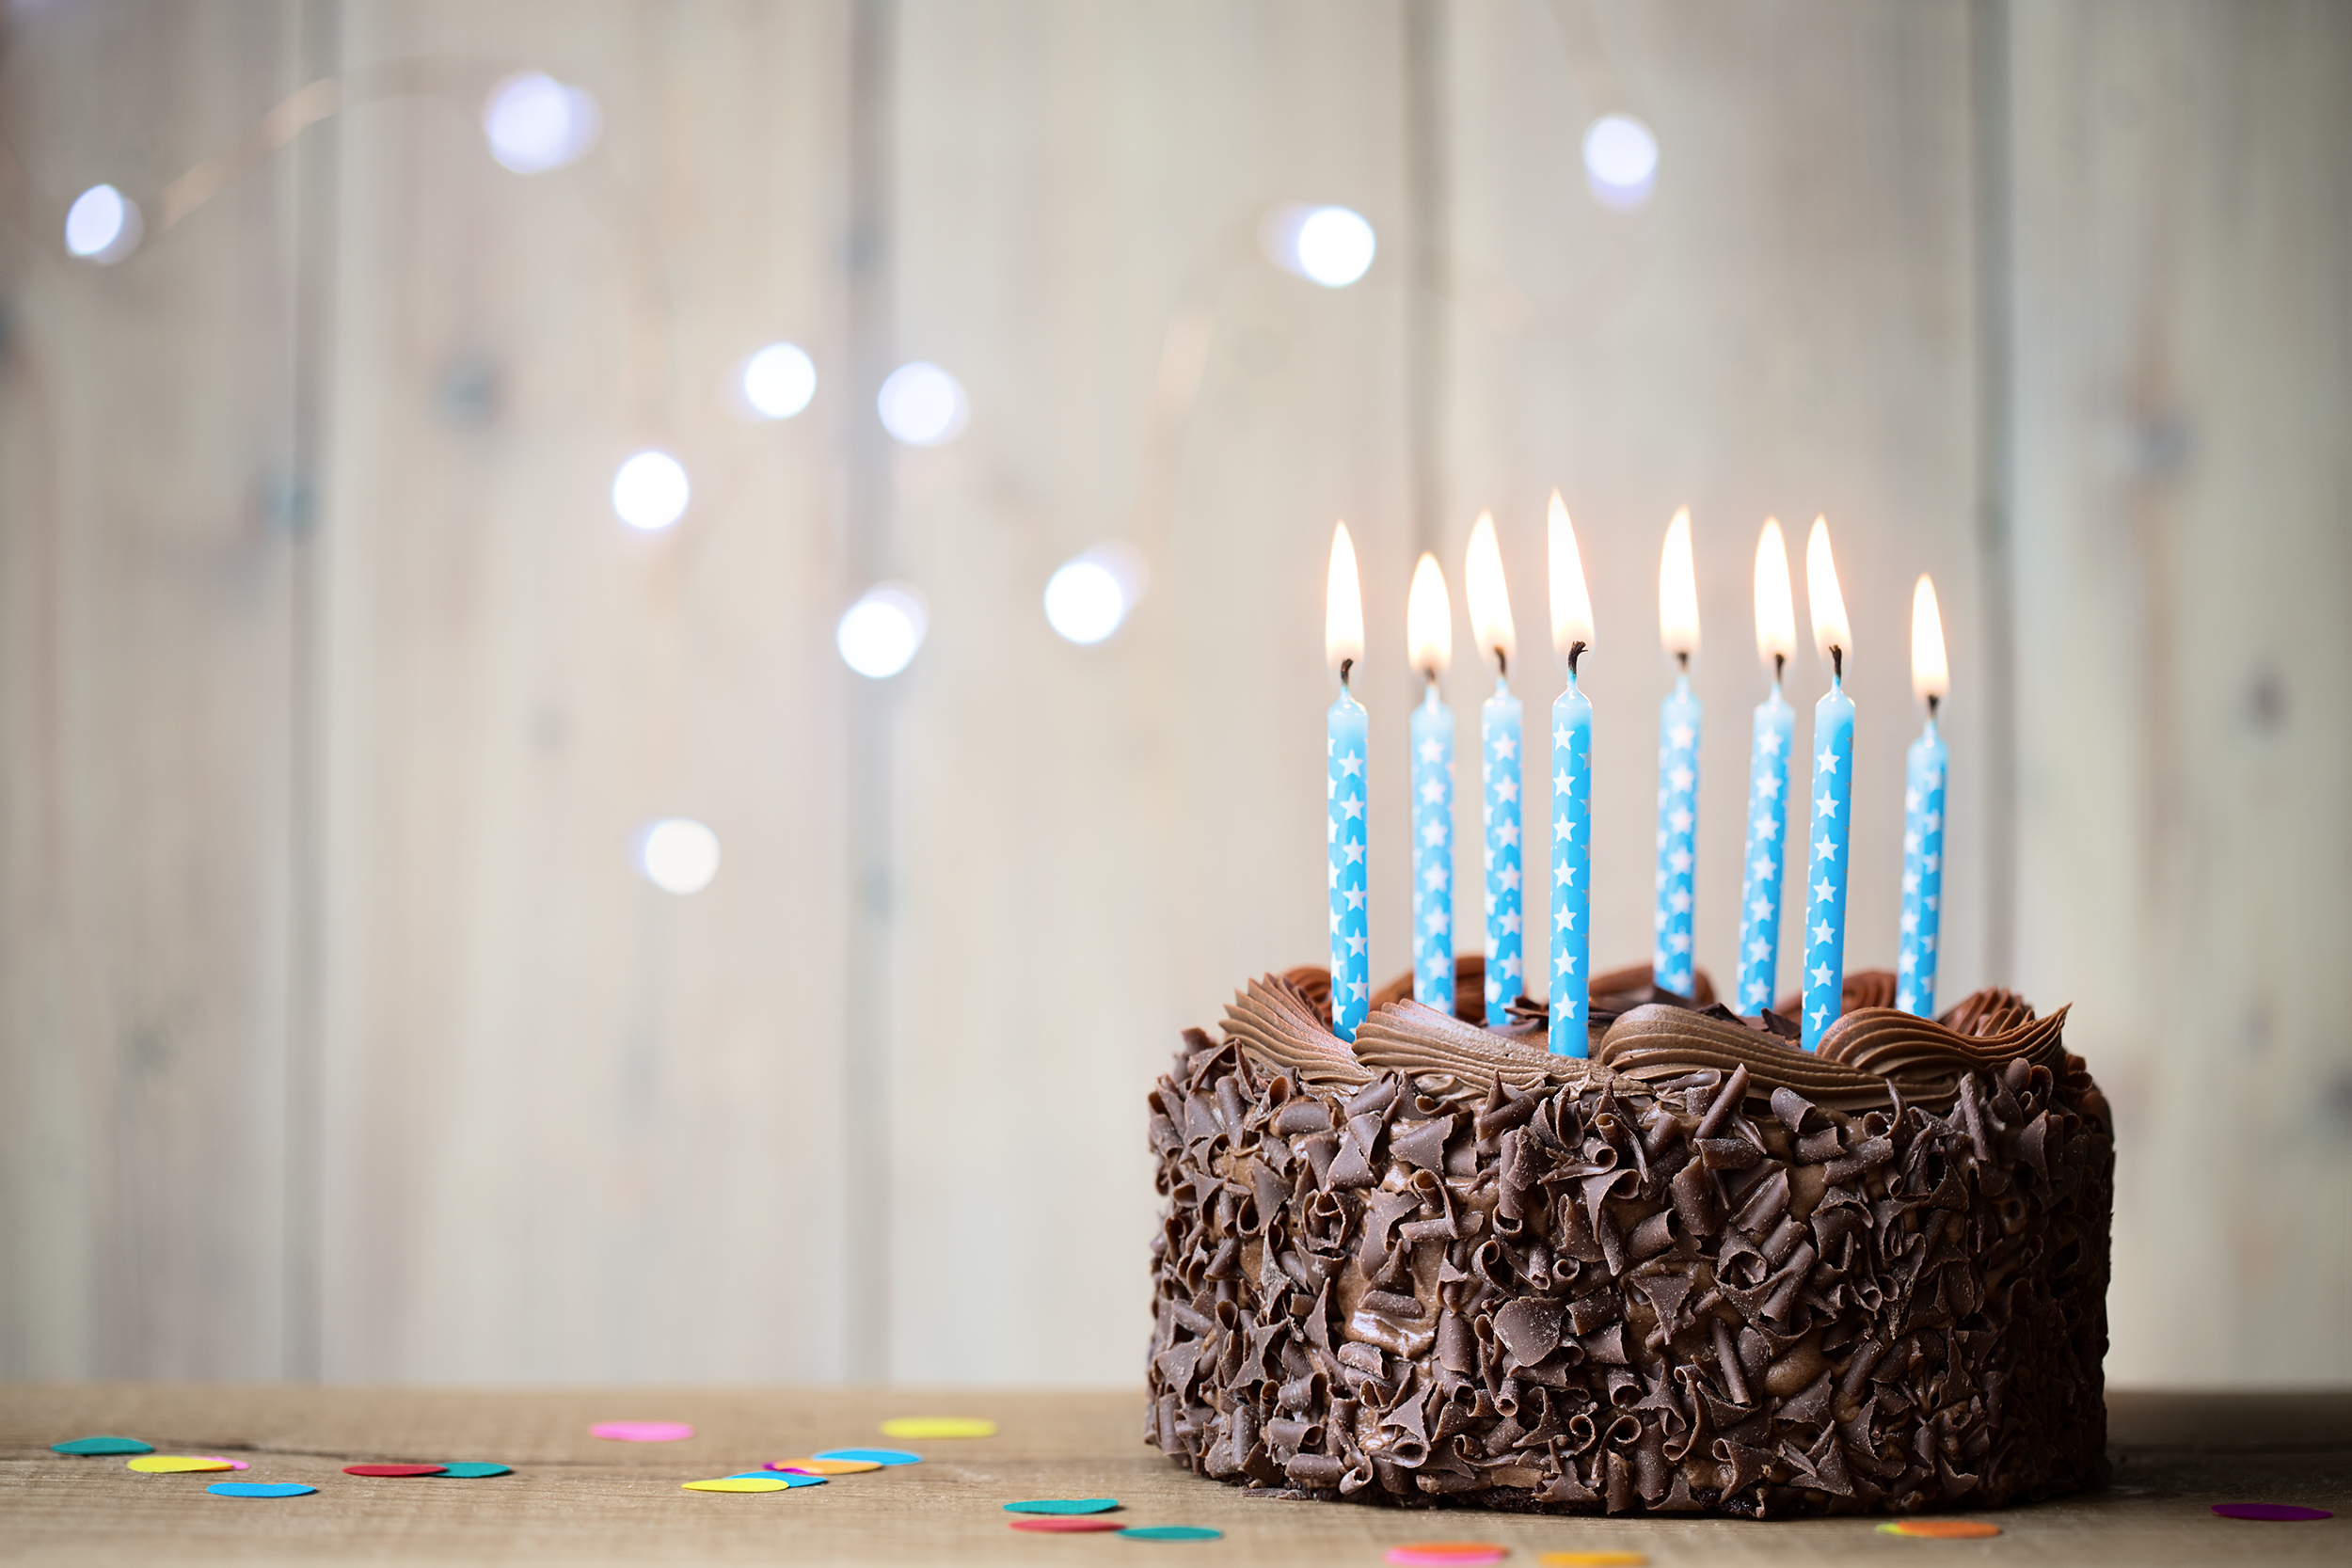 Eine Geburtstagstorte | Quelle: Shutterstock